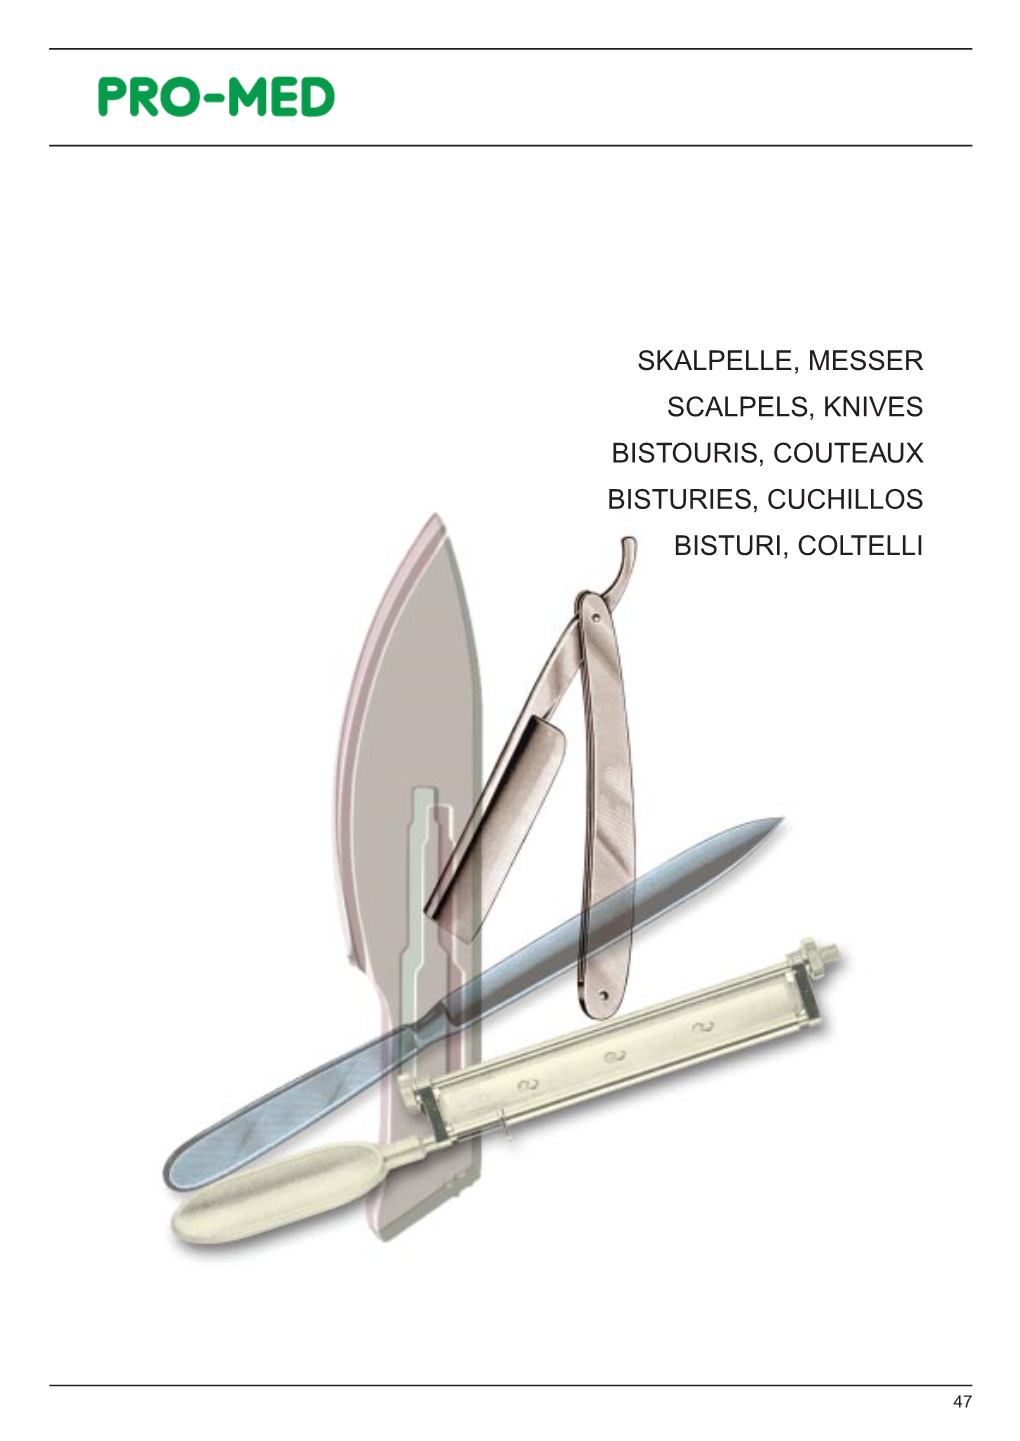 Skalpelle, Messer Scalpels, Knives Bistouris, Couteaux Bisturies, Cuchillos Bisturi, Coltelli